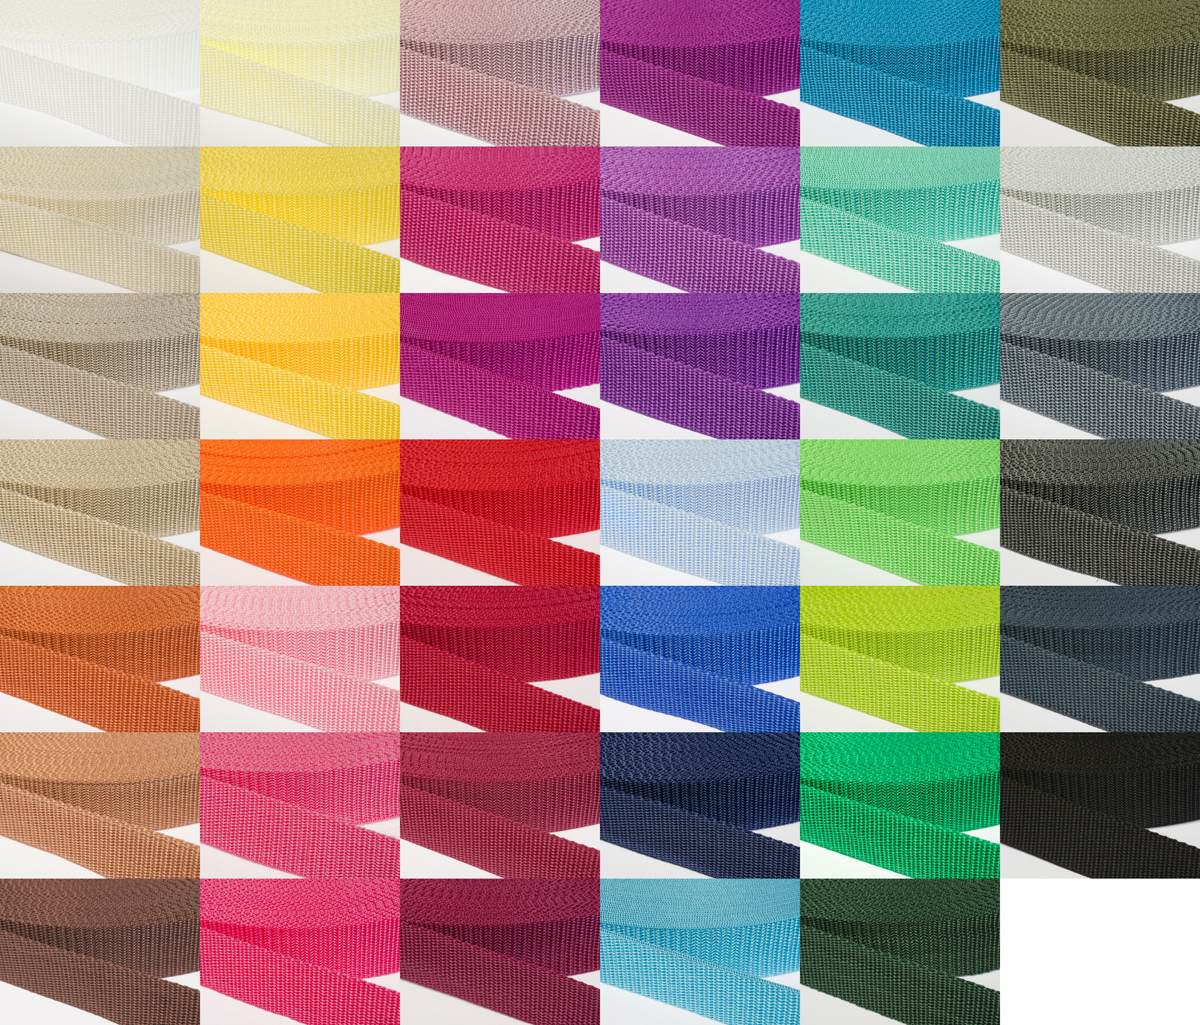 Gurtband 30mm breit aus Polypropylen in 41 Farben 31 - smaragdgrün 12 Meter